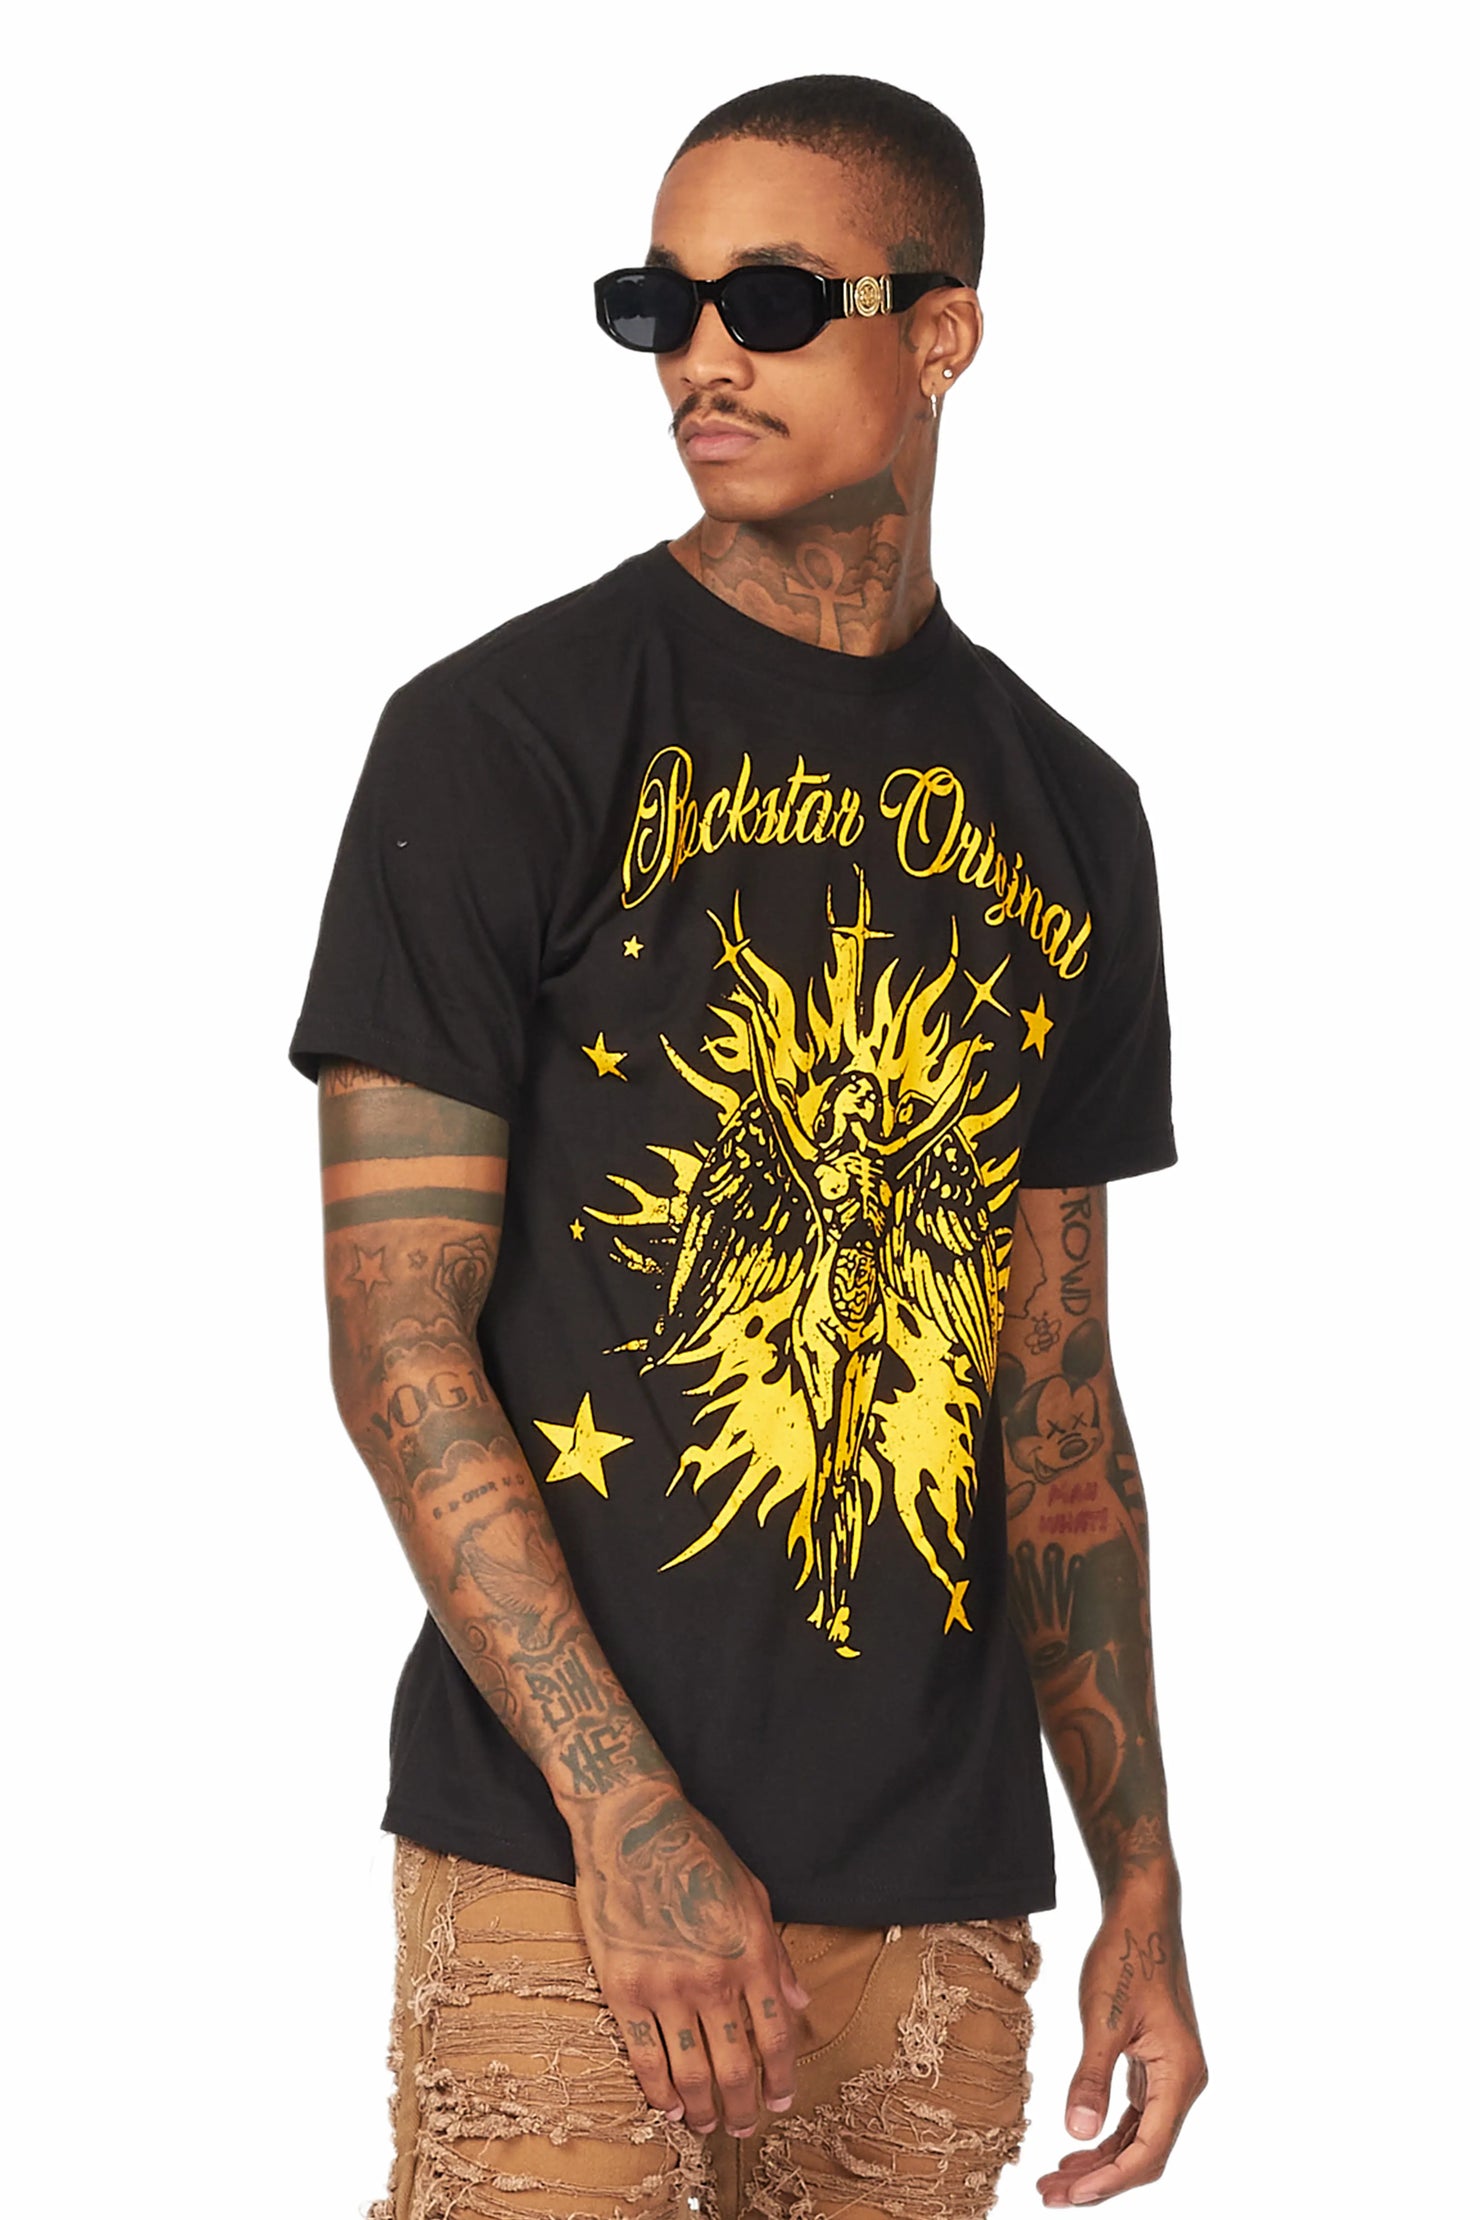 Mermaid Black/Yellow Graphic T-Shirt